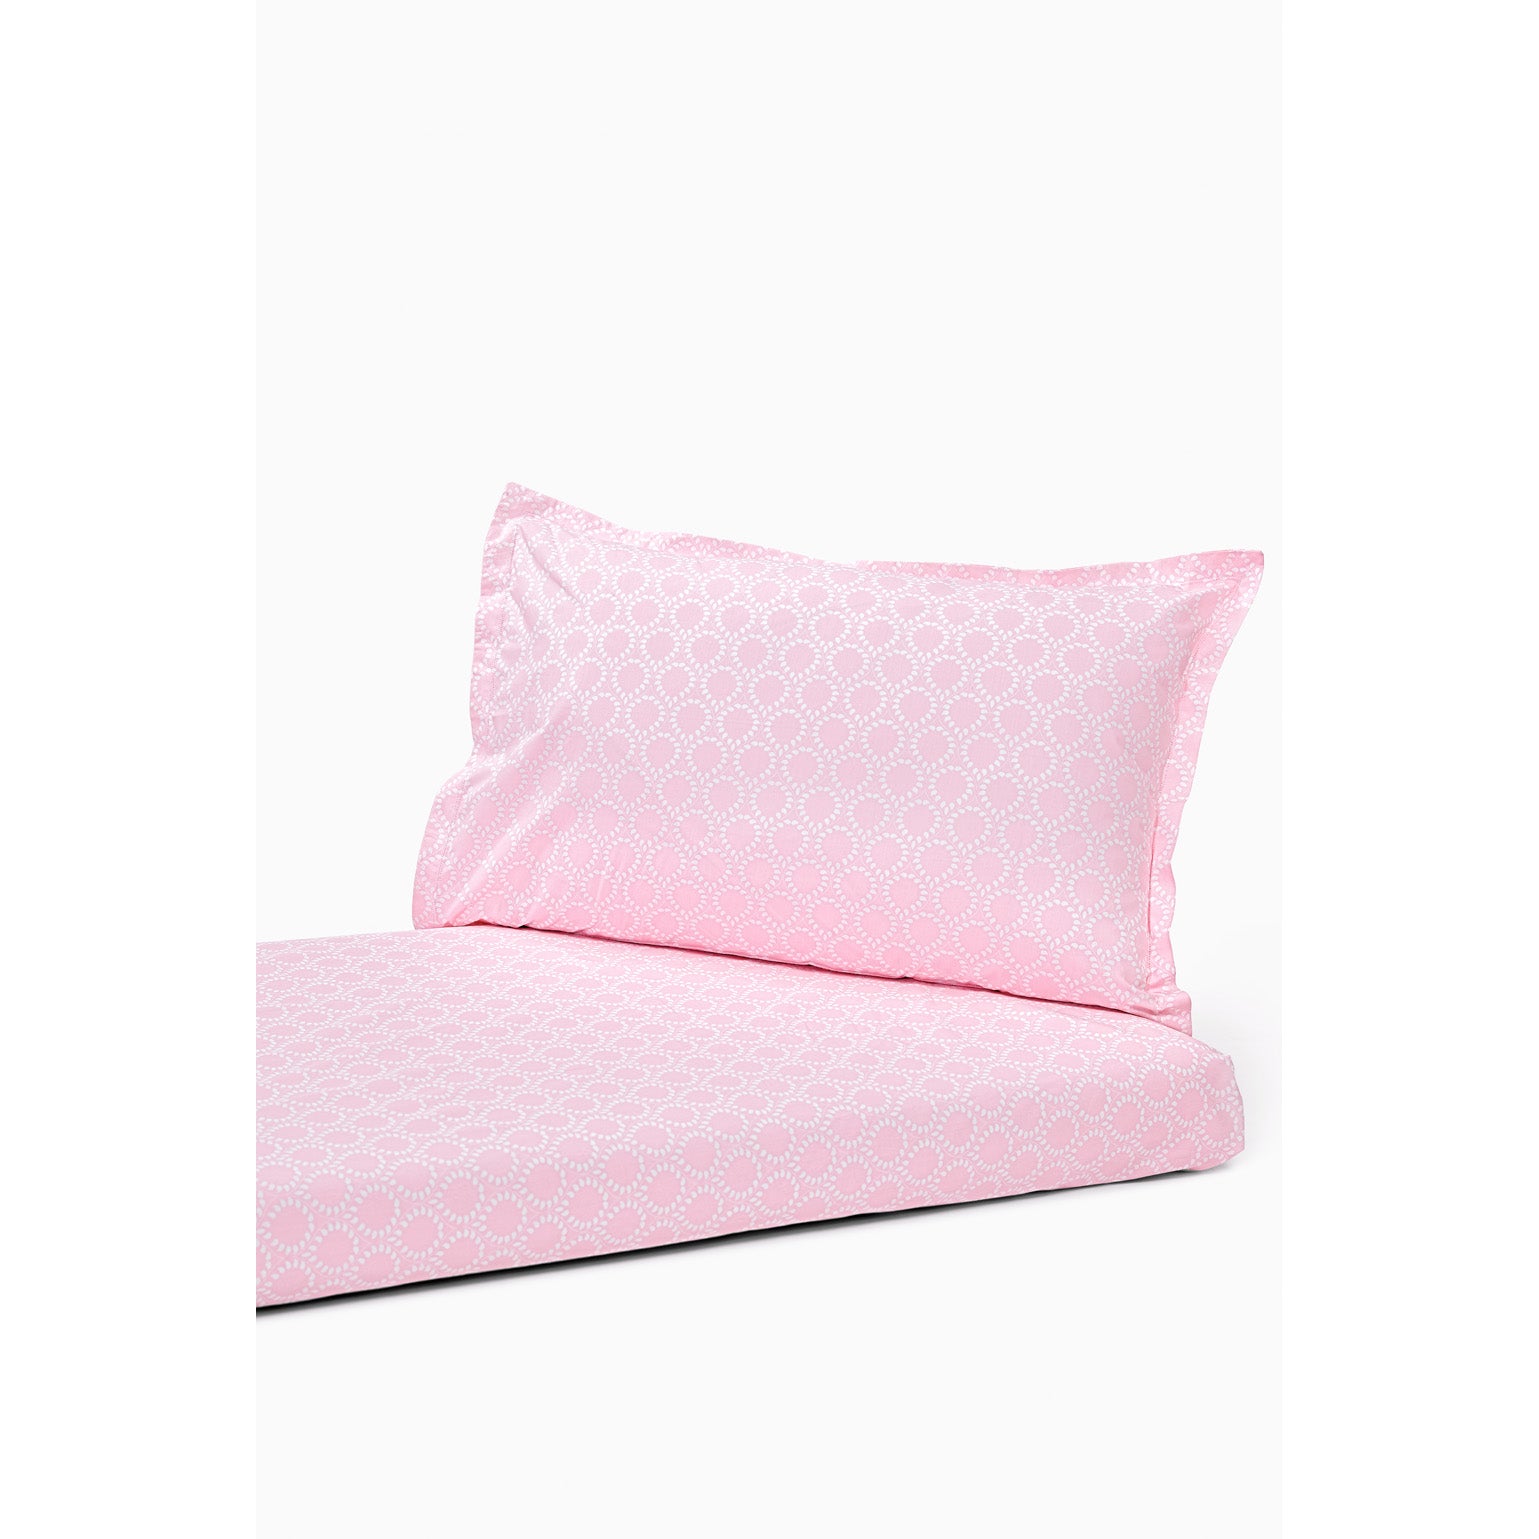 Bedsheet Set - Pink Leaf, Double Bed Size